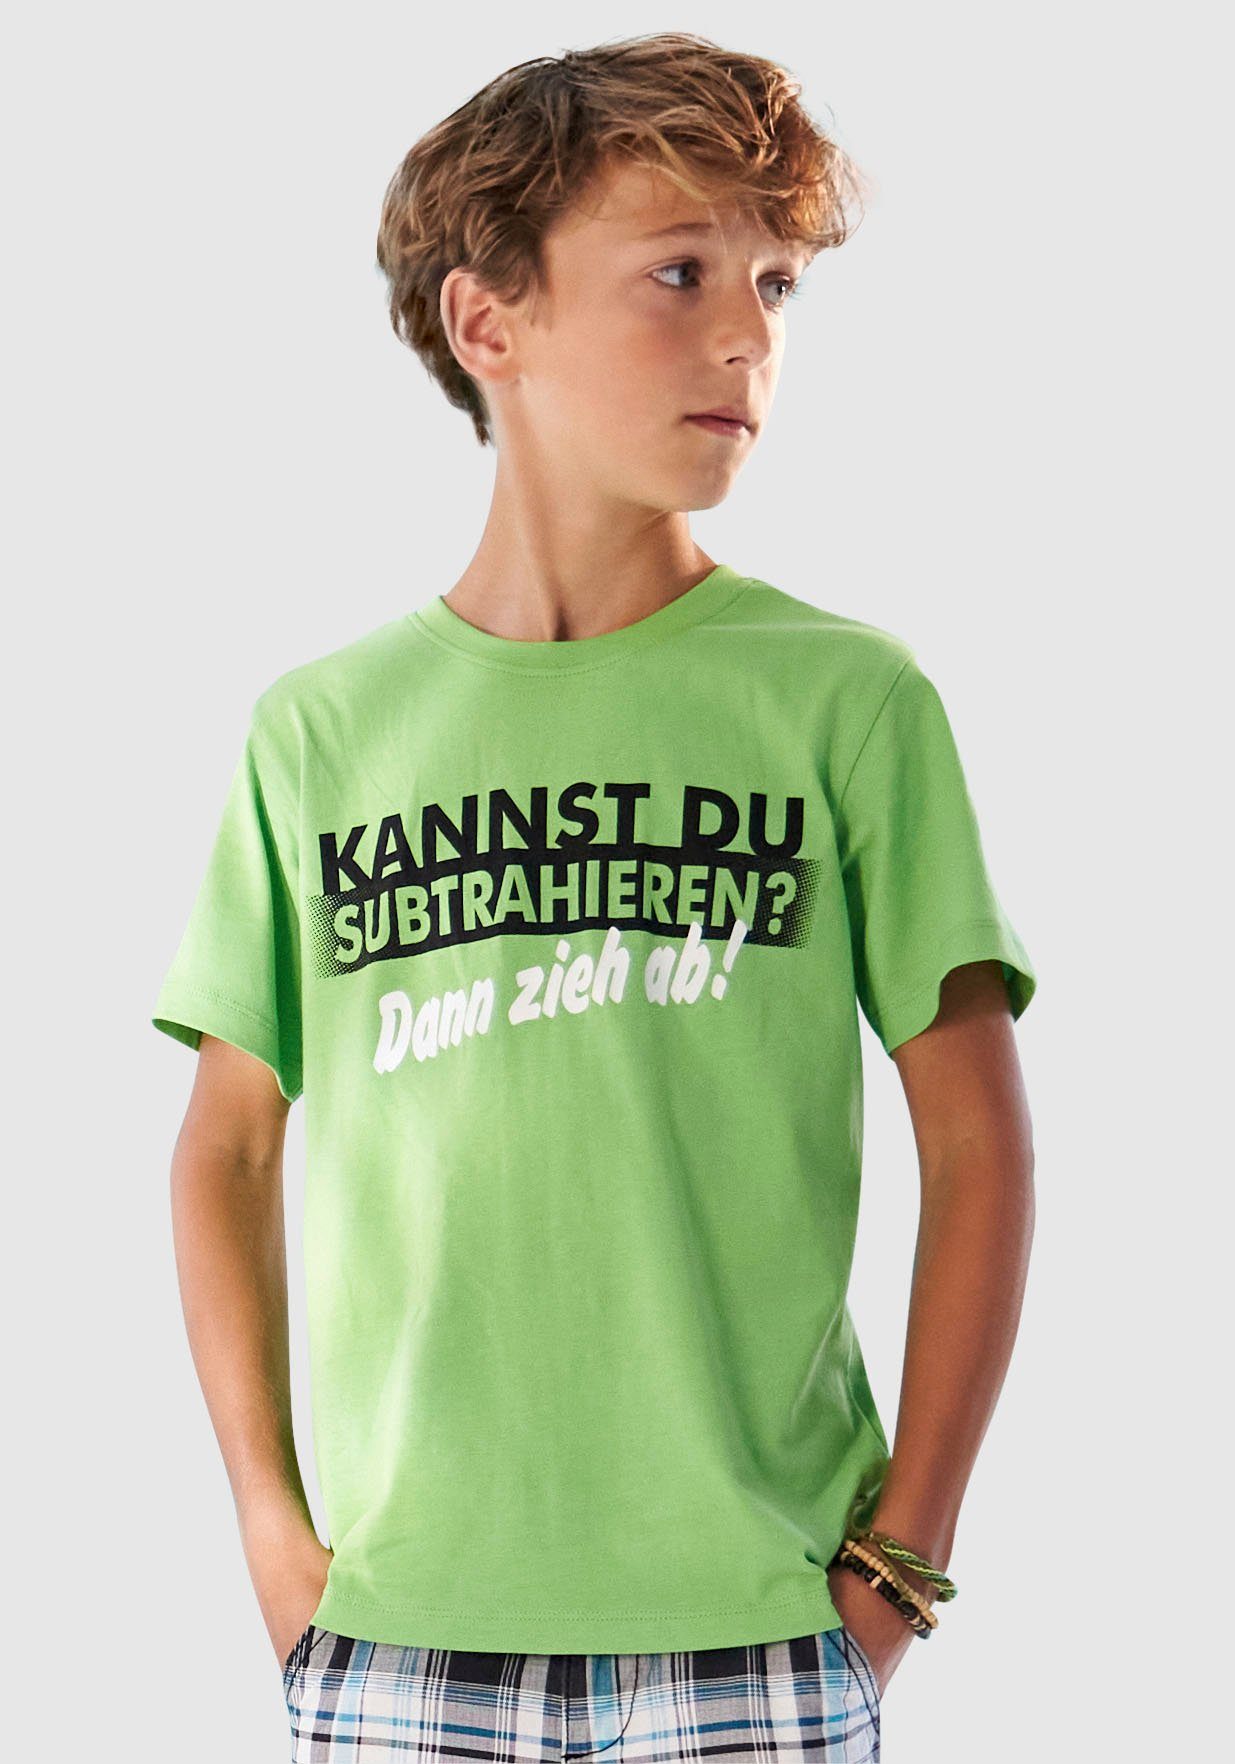 KANNST DU KIDSWORLD SUBTRAHIEREN?, Spruch T-Shirt